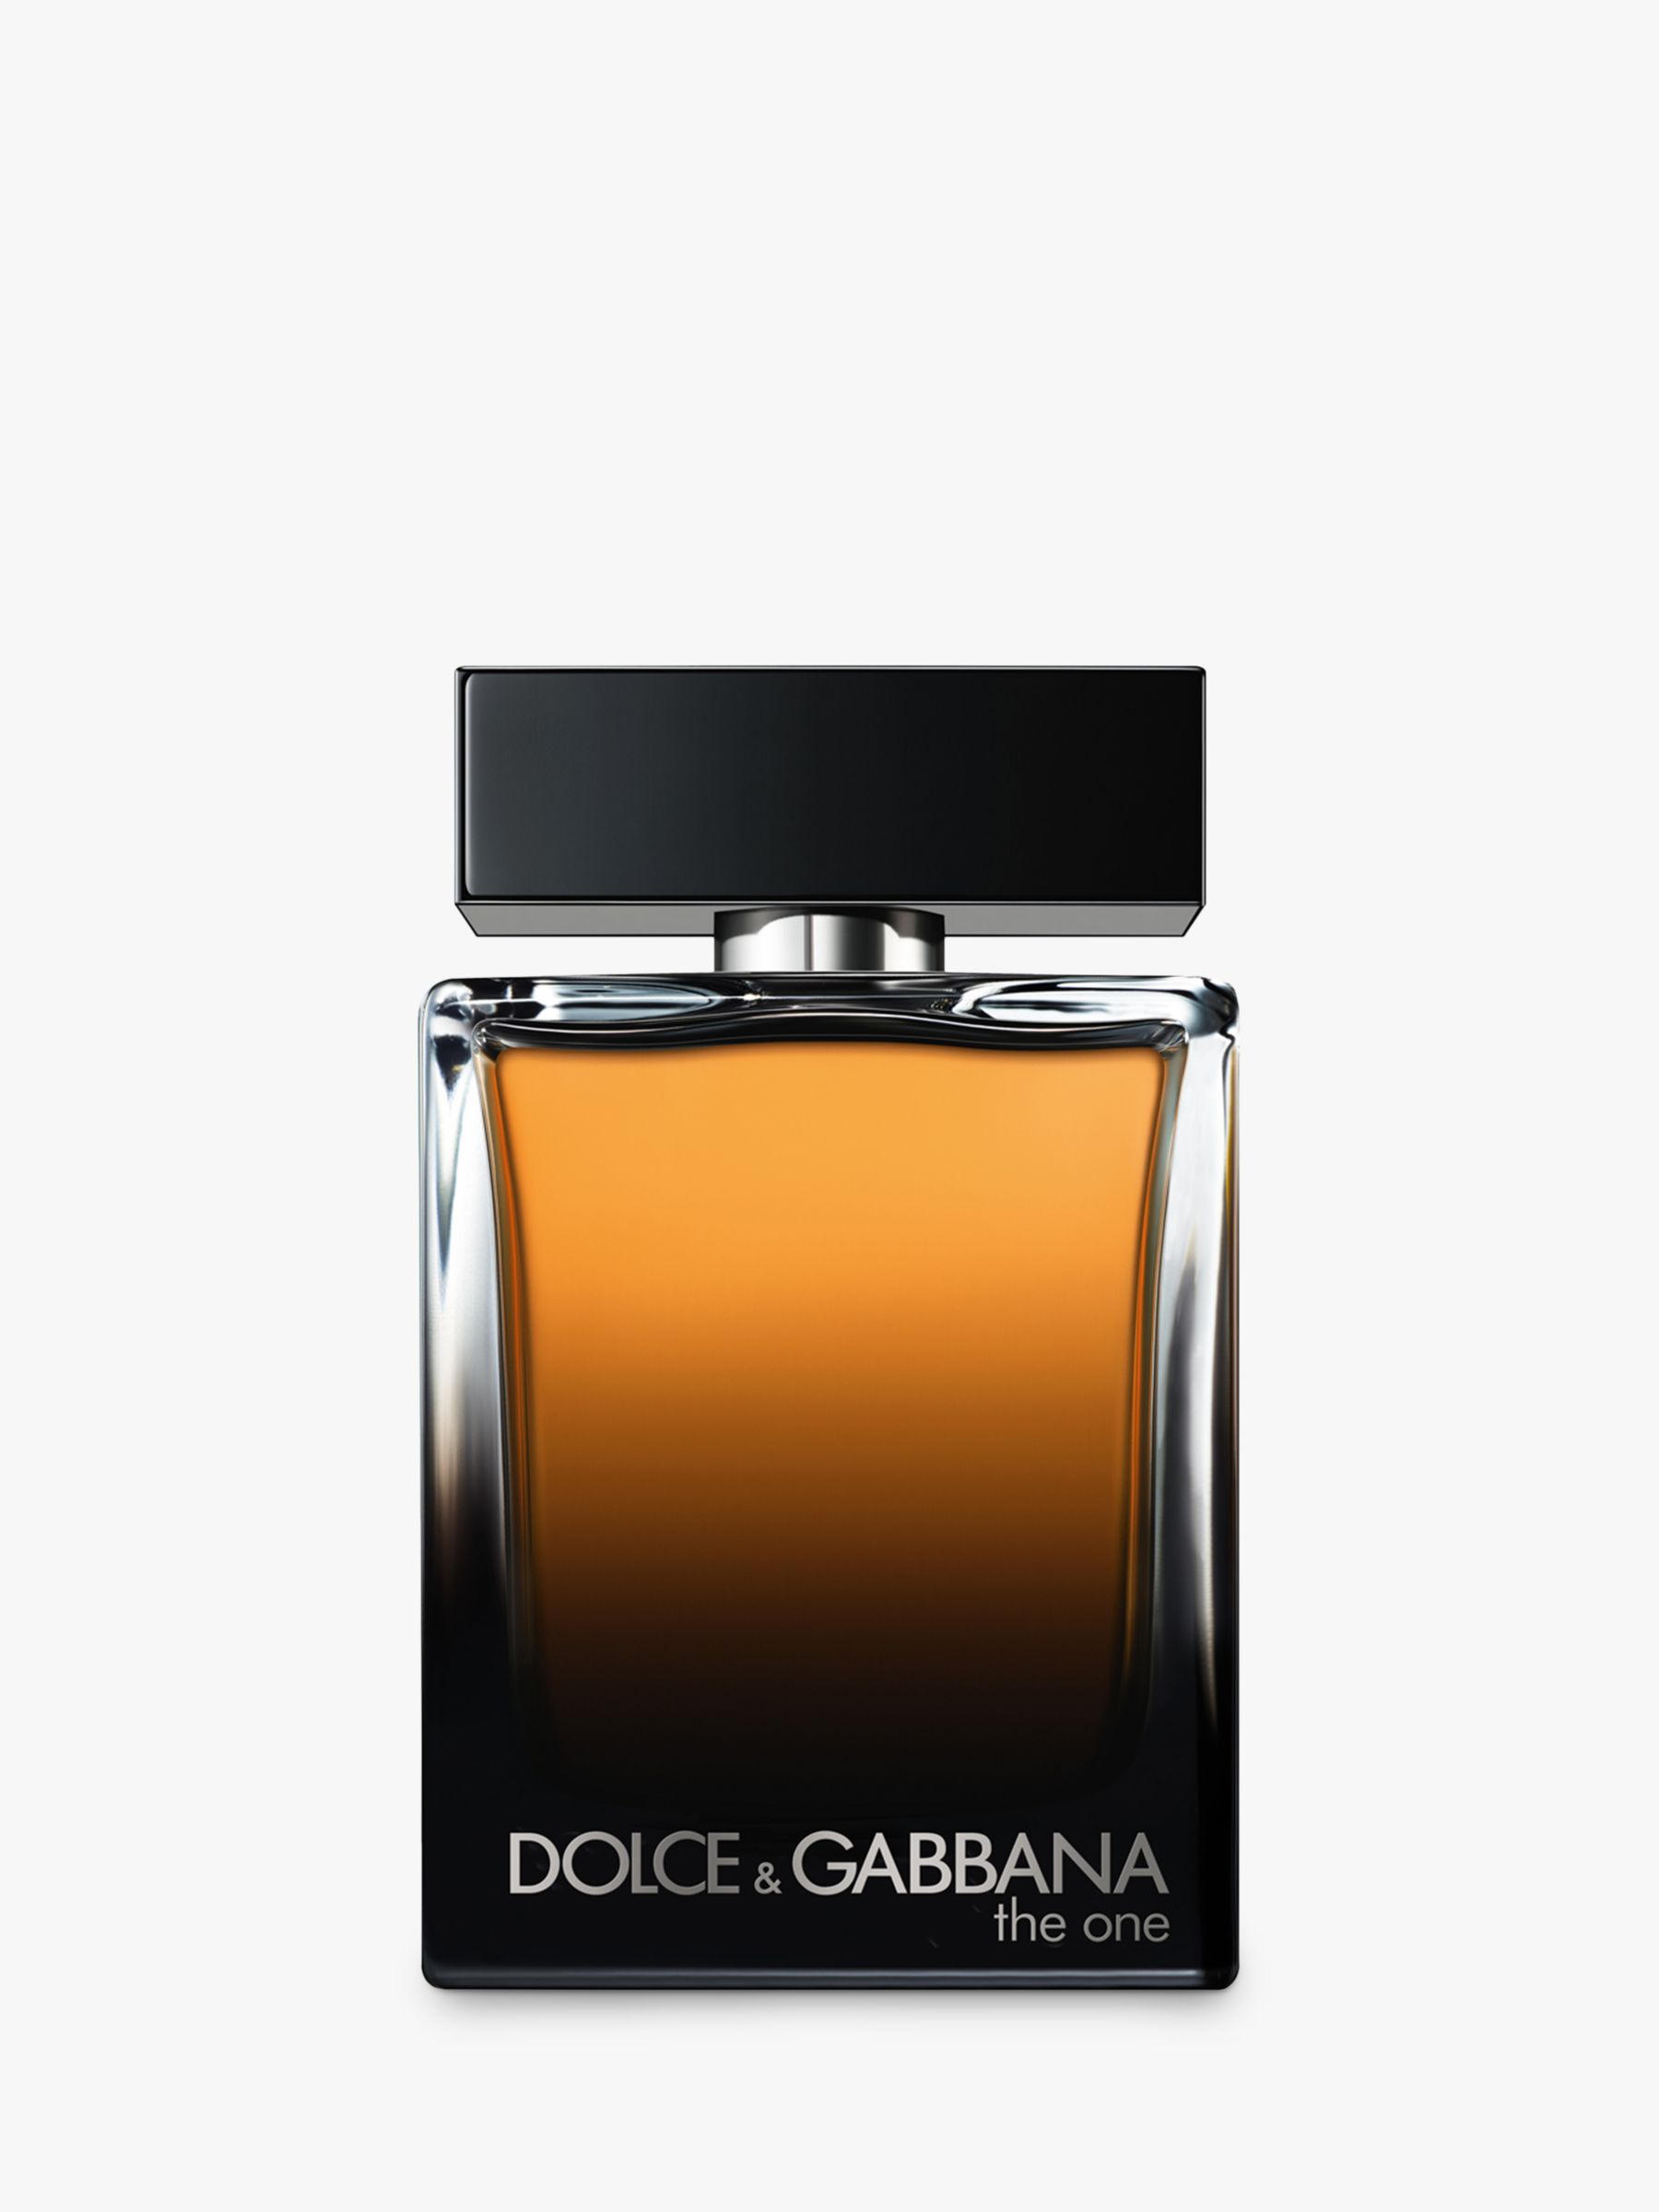 Dolce & Gabbana The One For Men Eau de Parfum, 50ml